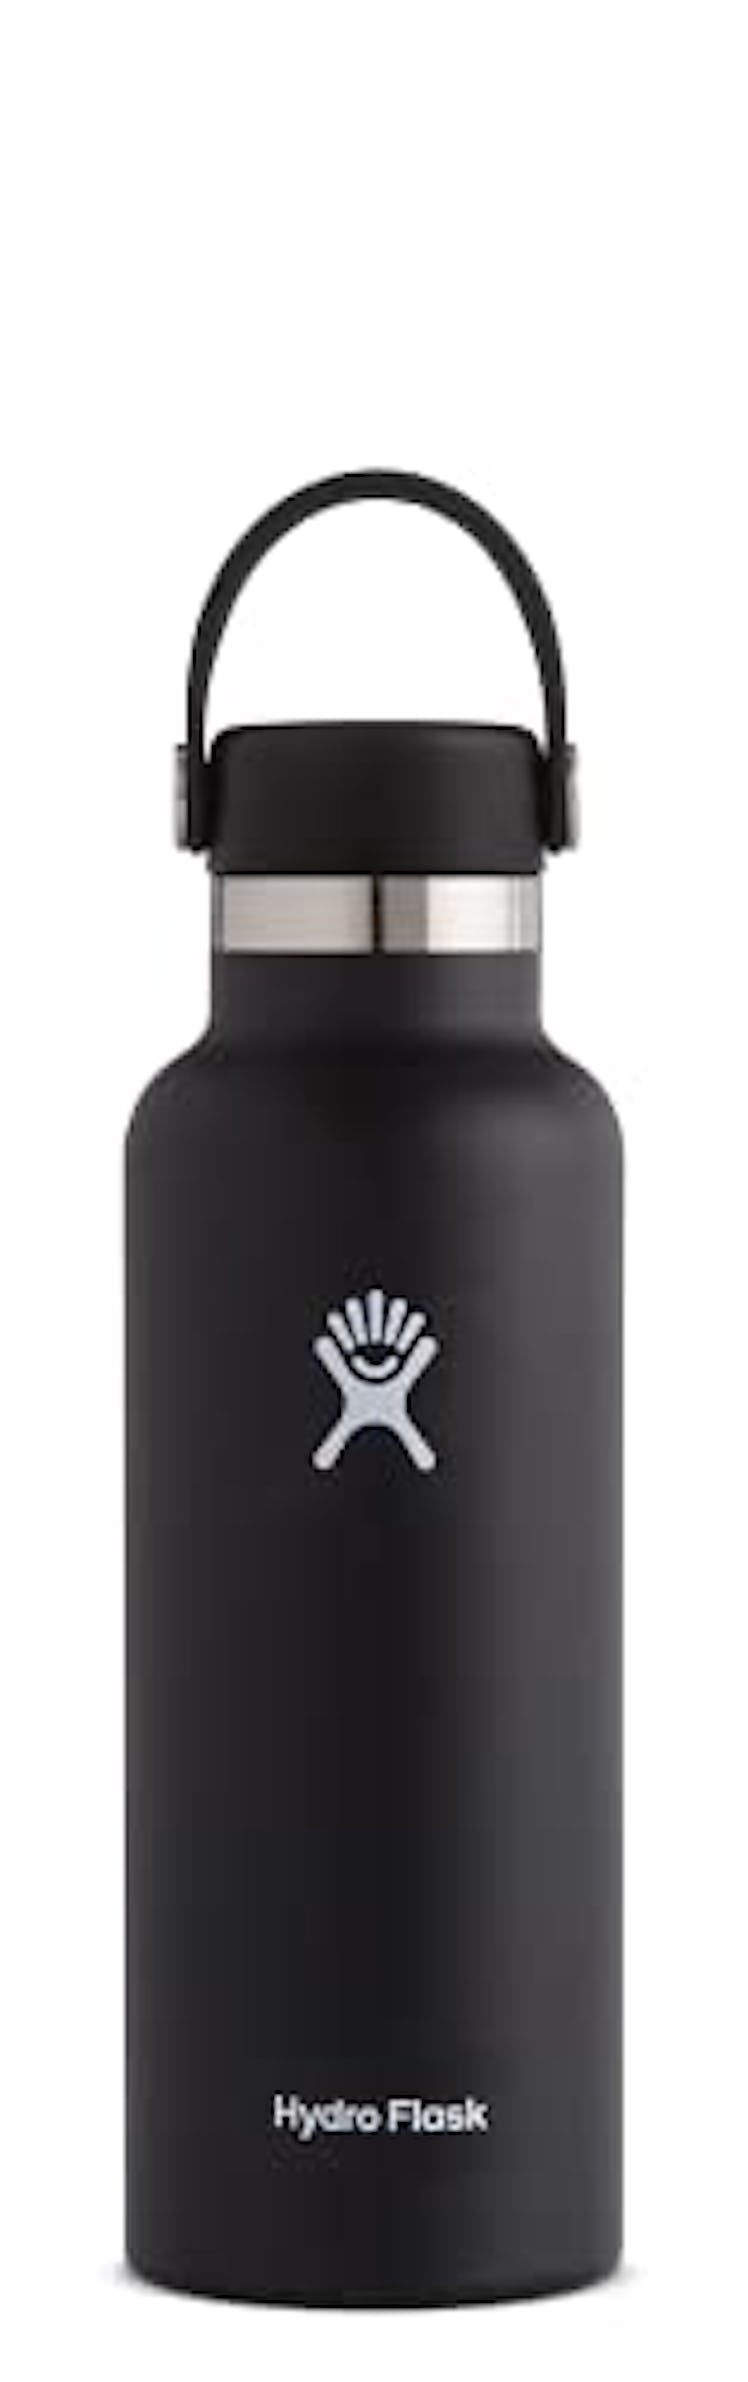 Water Bottle by Hydro Flask